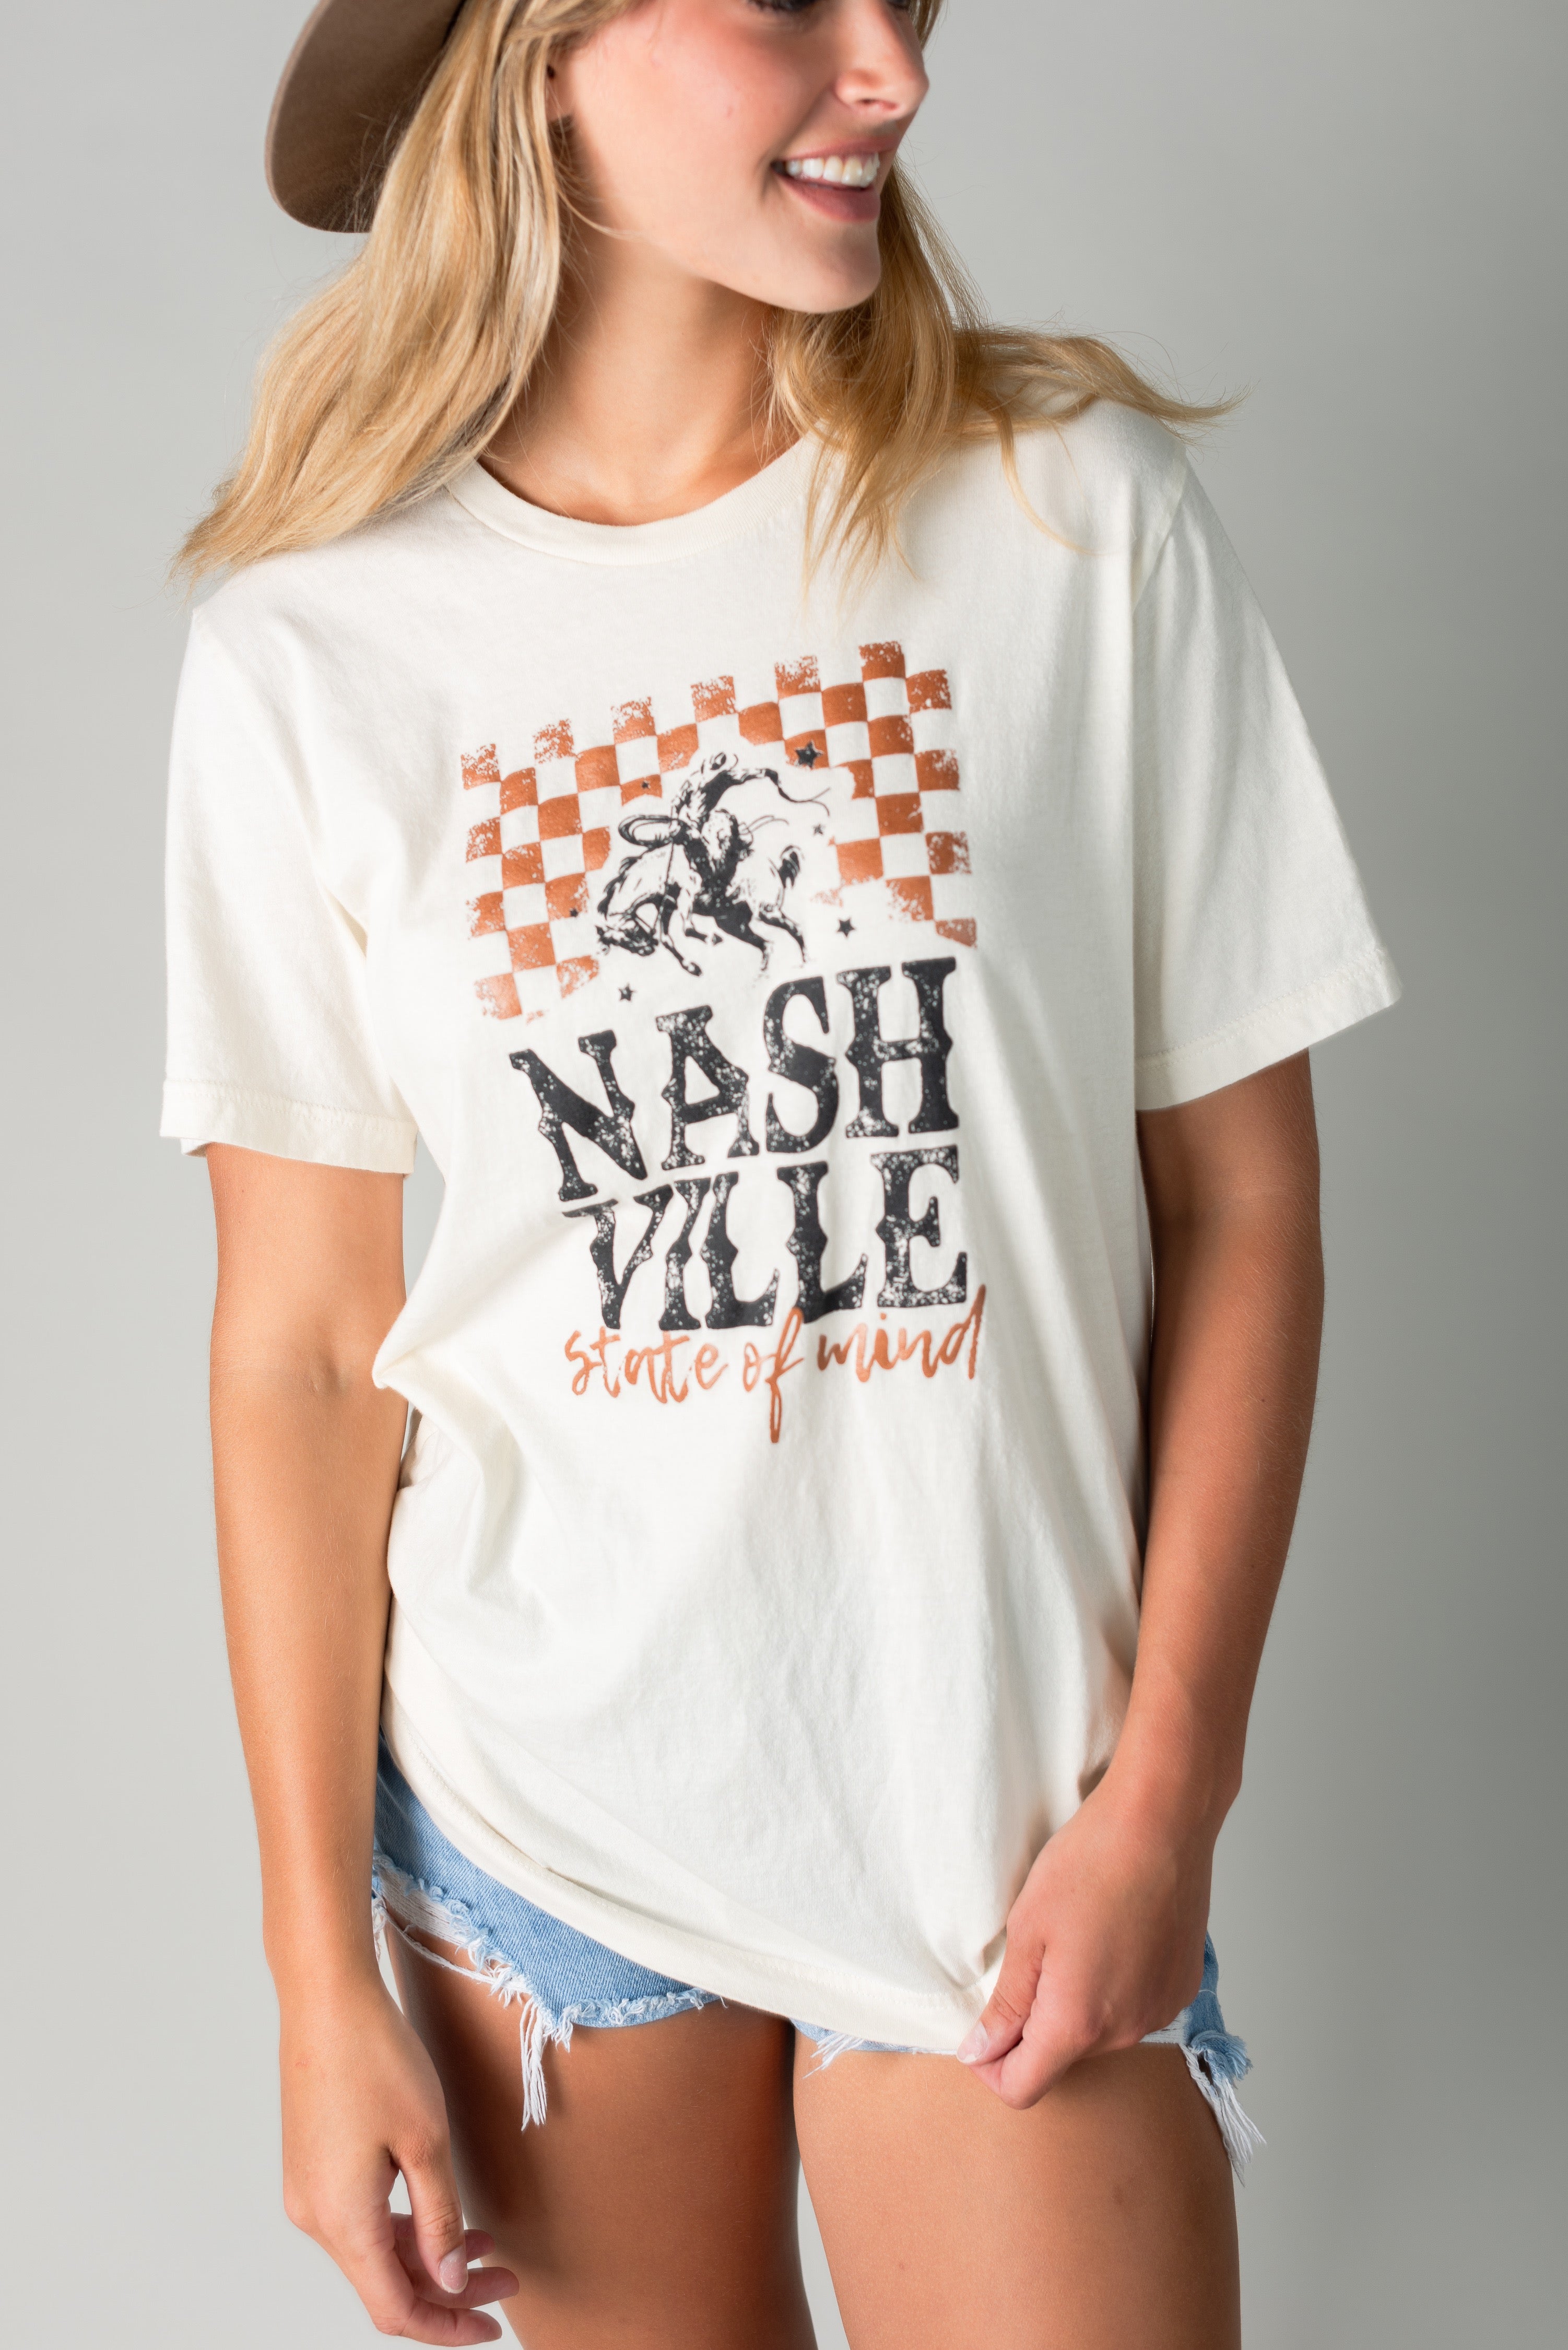 Nashville State of Mind Tee